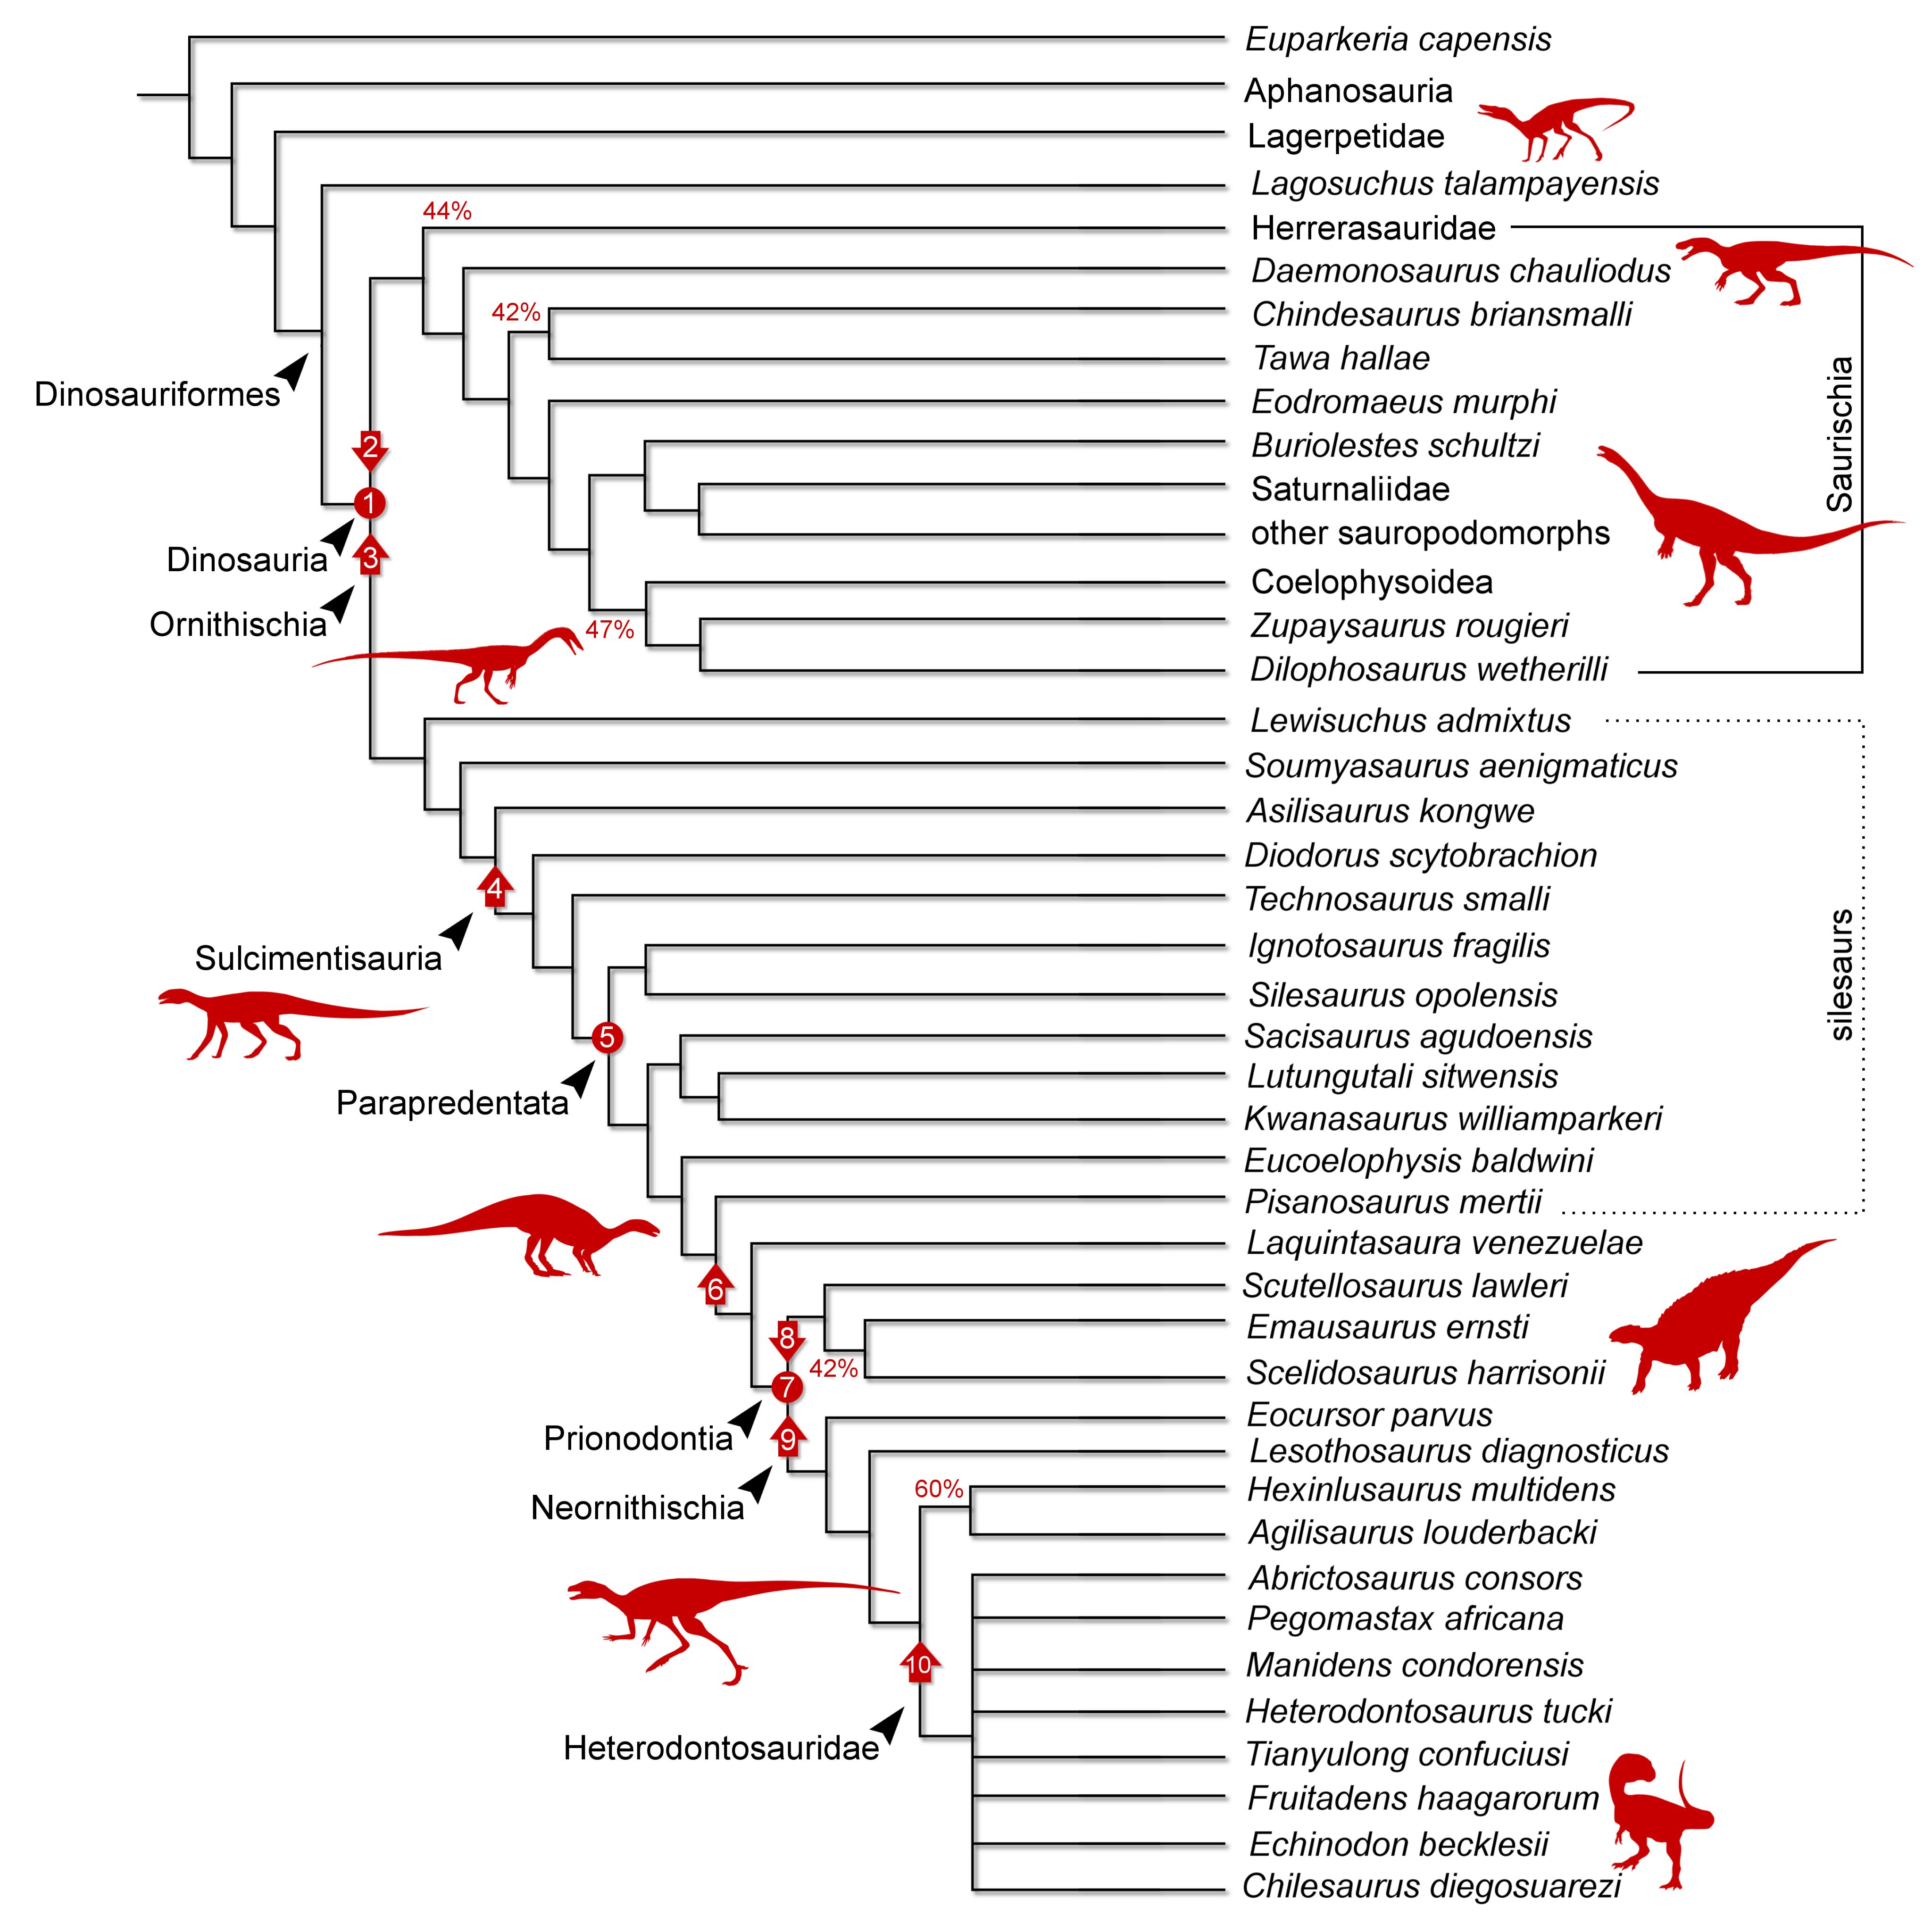 Dinosaur family tree